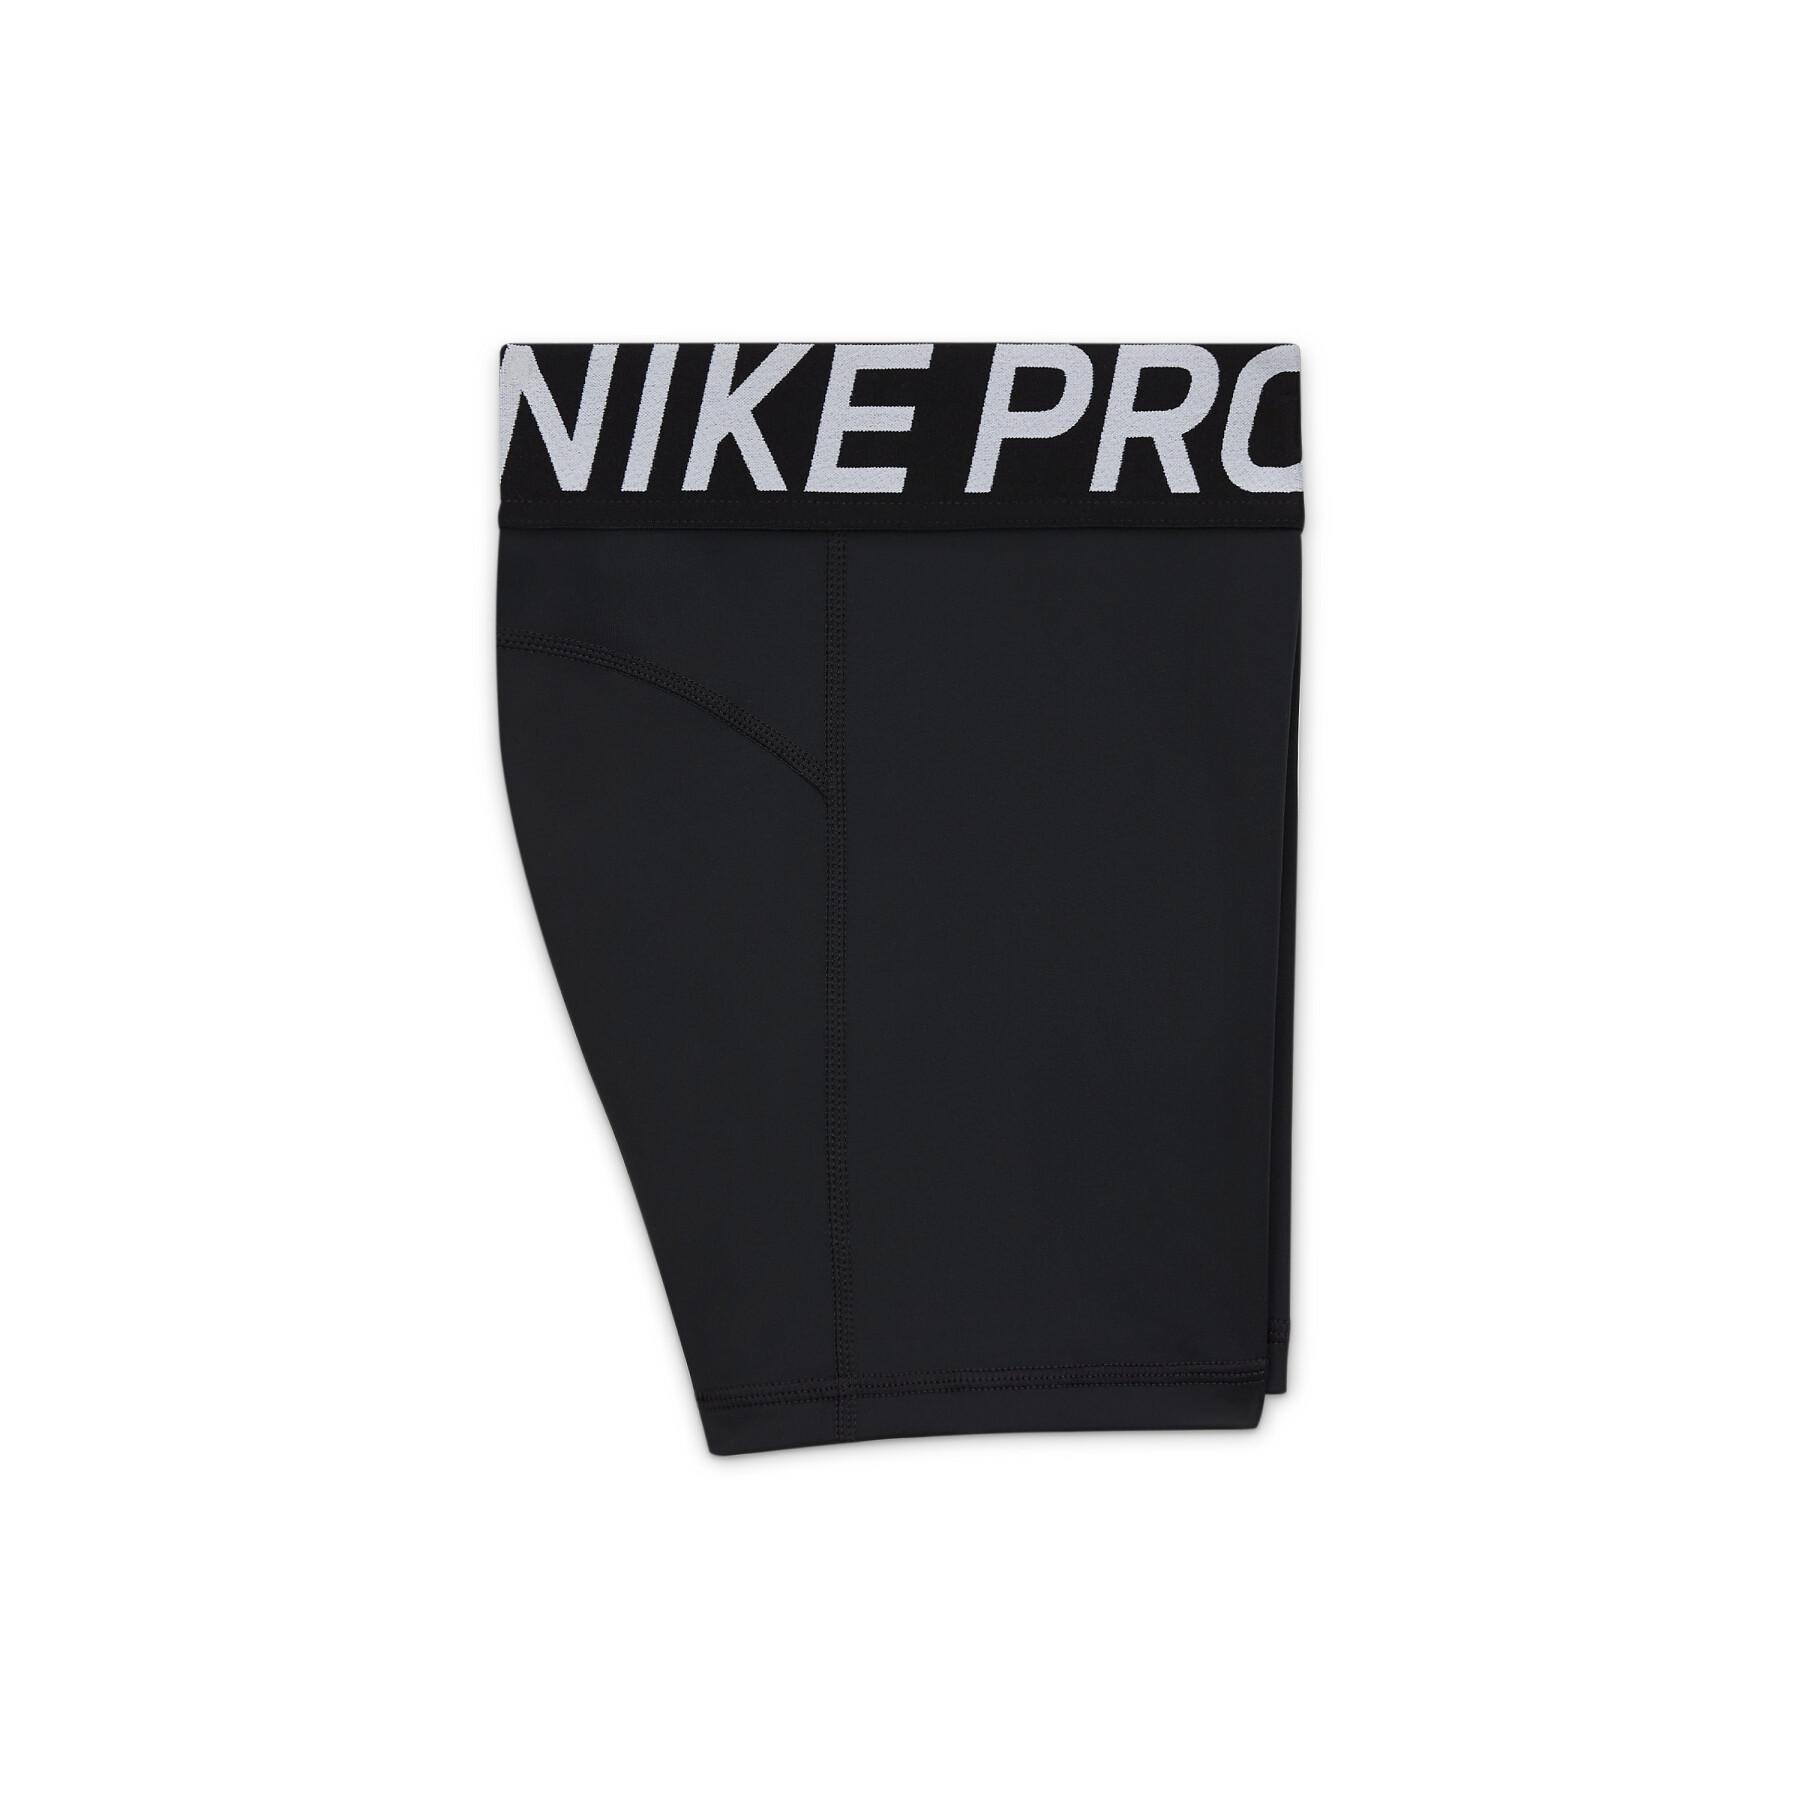 Short broek voor meisjes Nike Pro